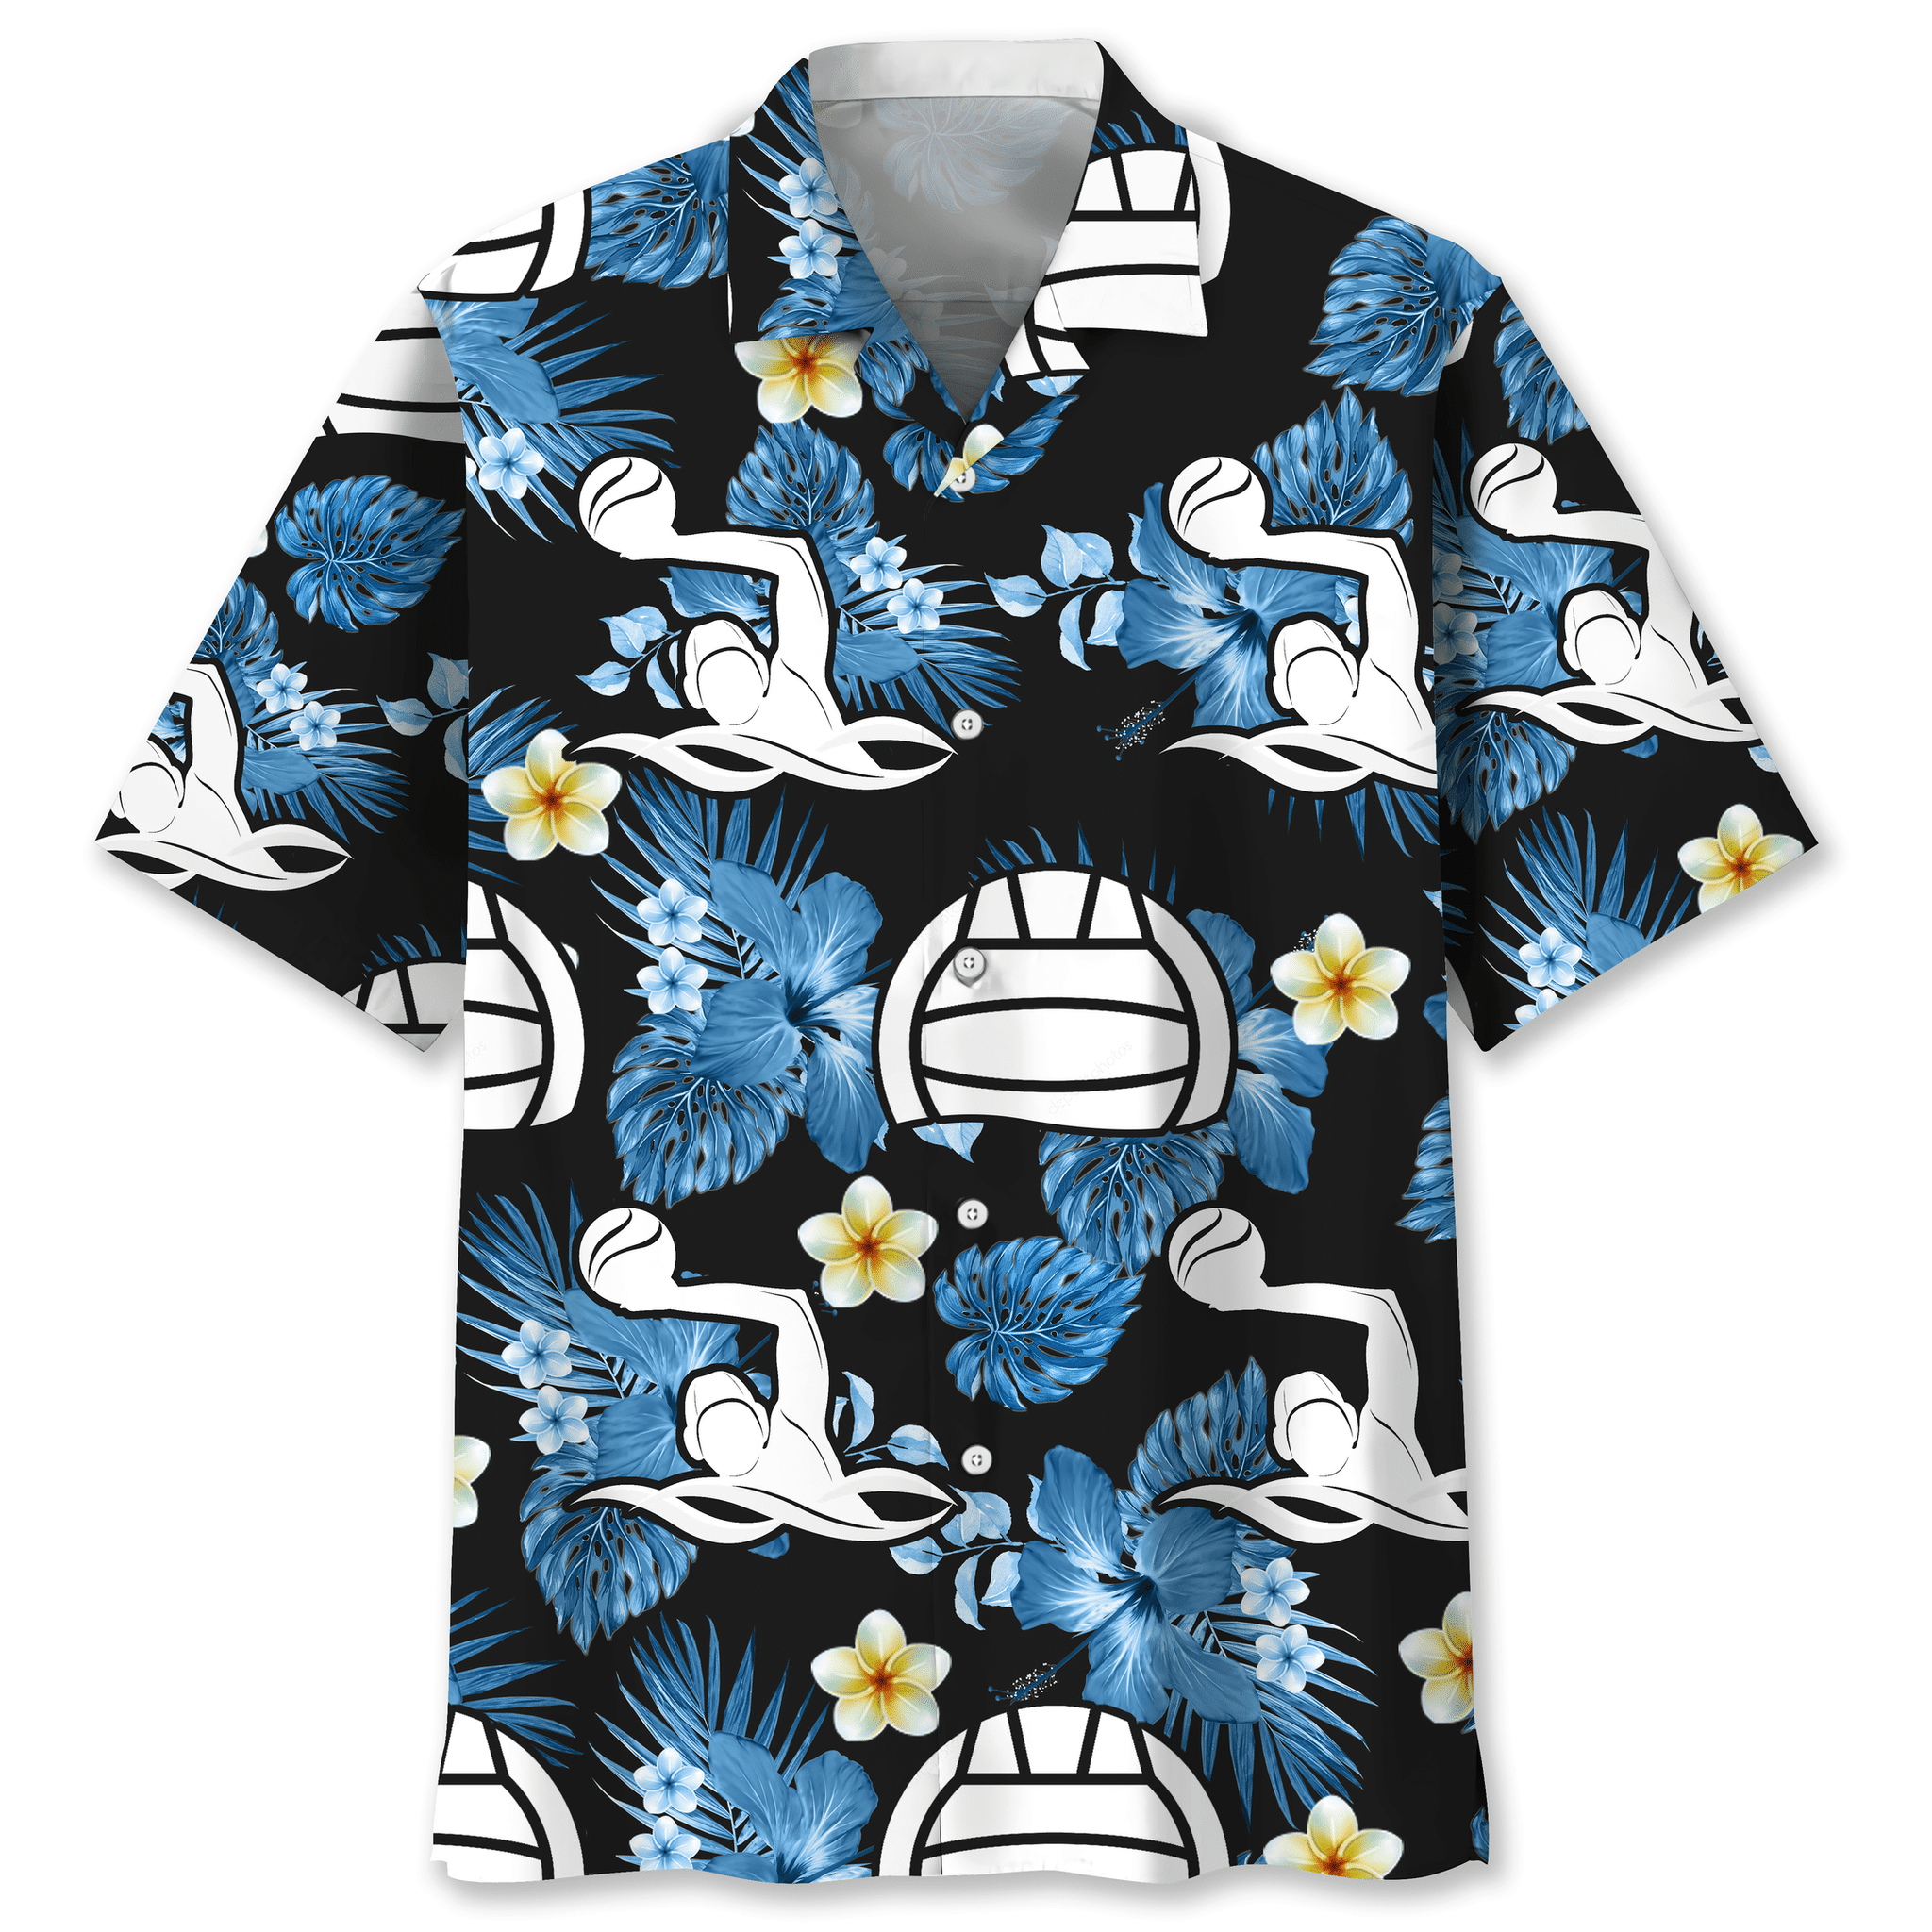 Water polo Hawaiian shirt and short – LIMITED EDITION